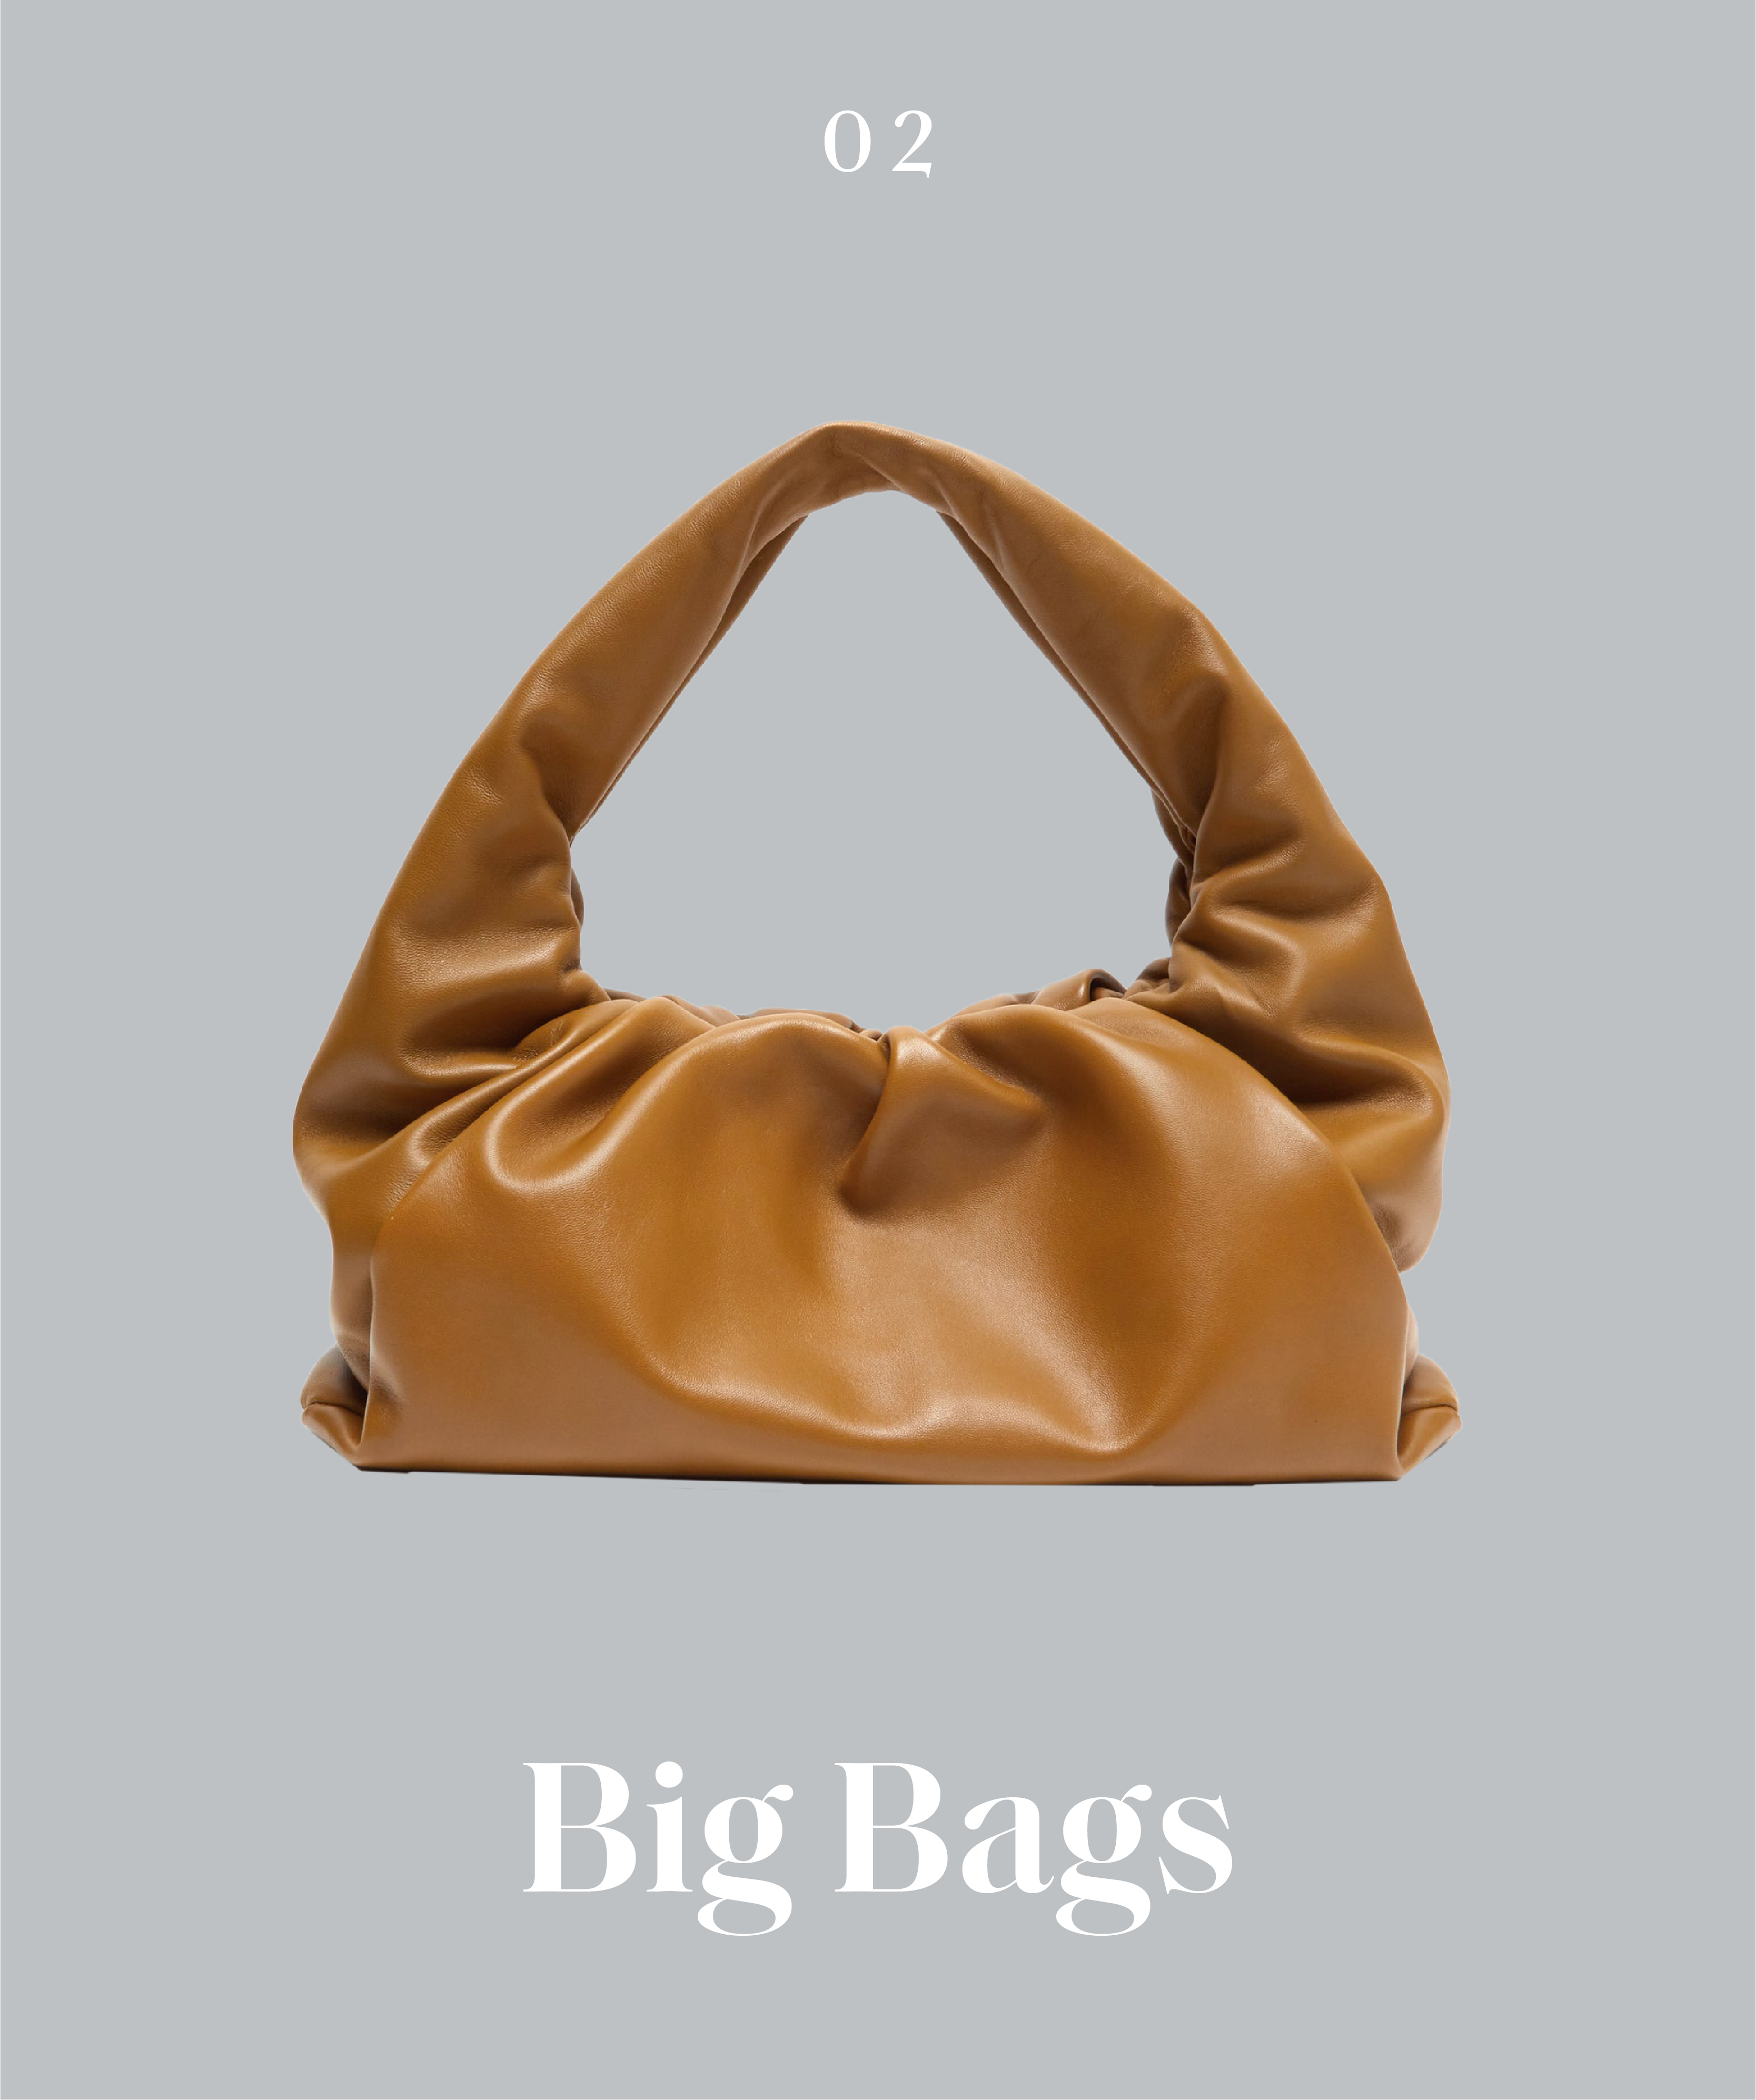 Bag, Handbag, Hobo bag, Tan, Brown, Shoulder bag, Fashion accessory, Caramel color, Leather, Beige, 